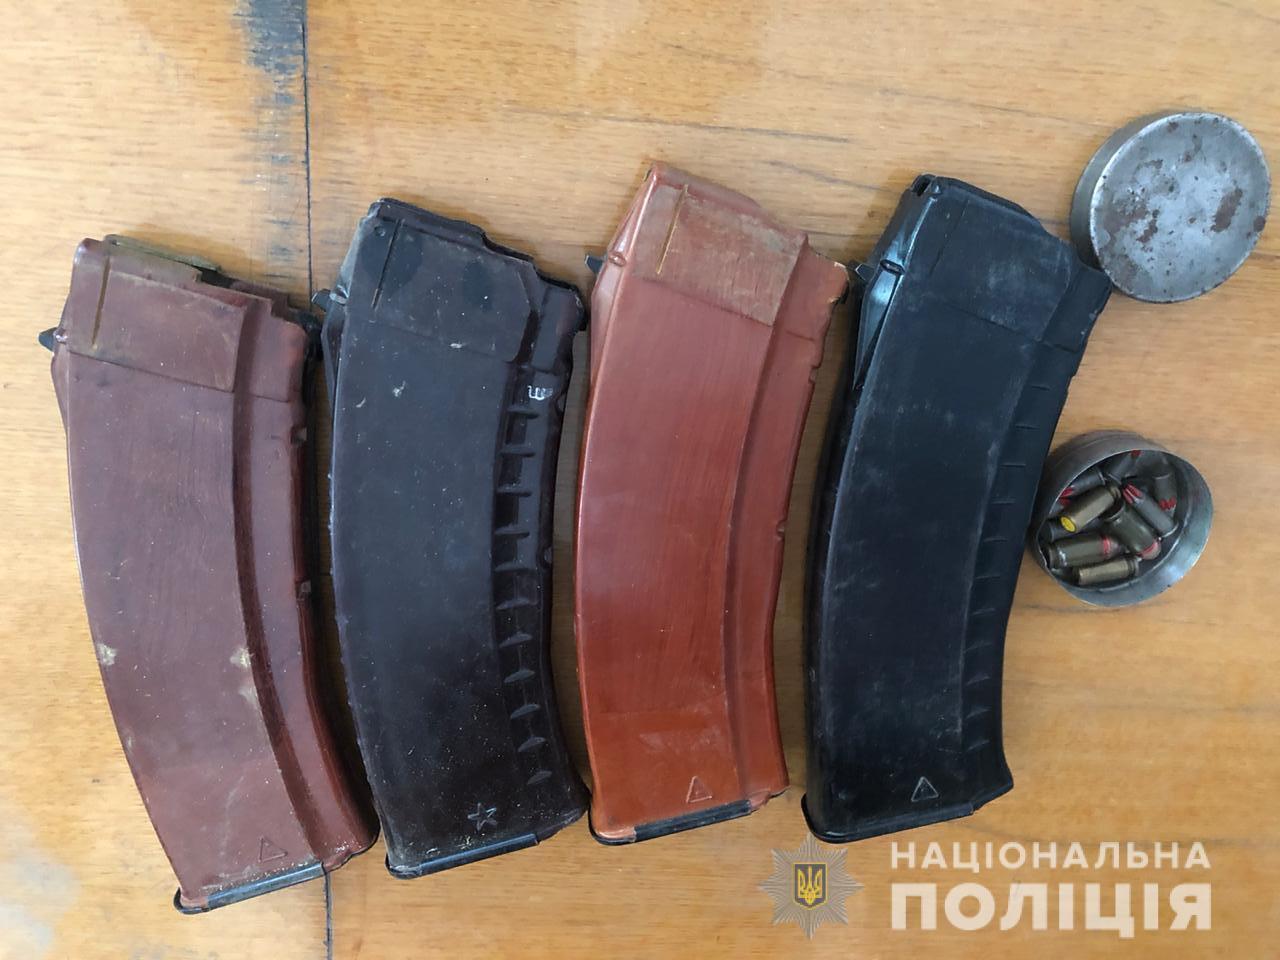 Одеські поліцейські вилучили у місцевого жителя зброю та боєприпаси